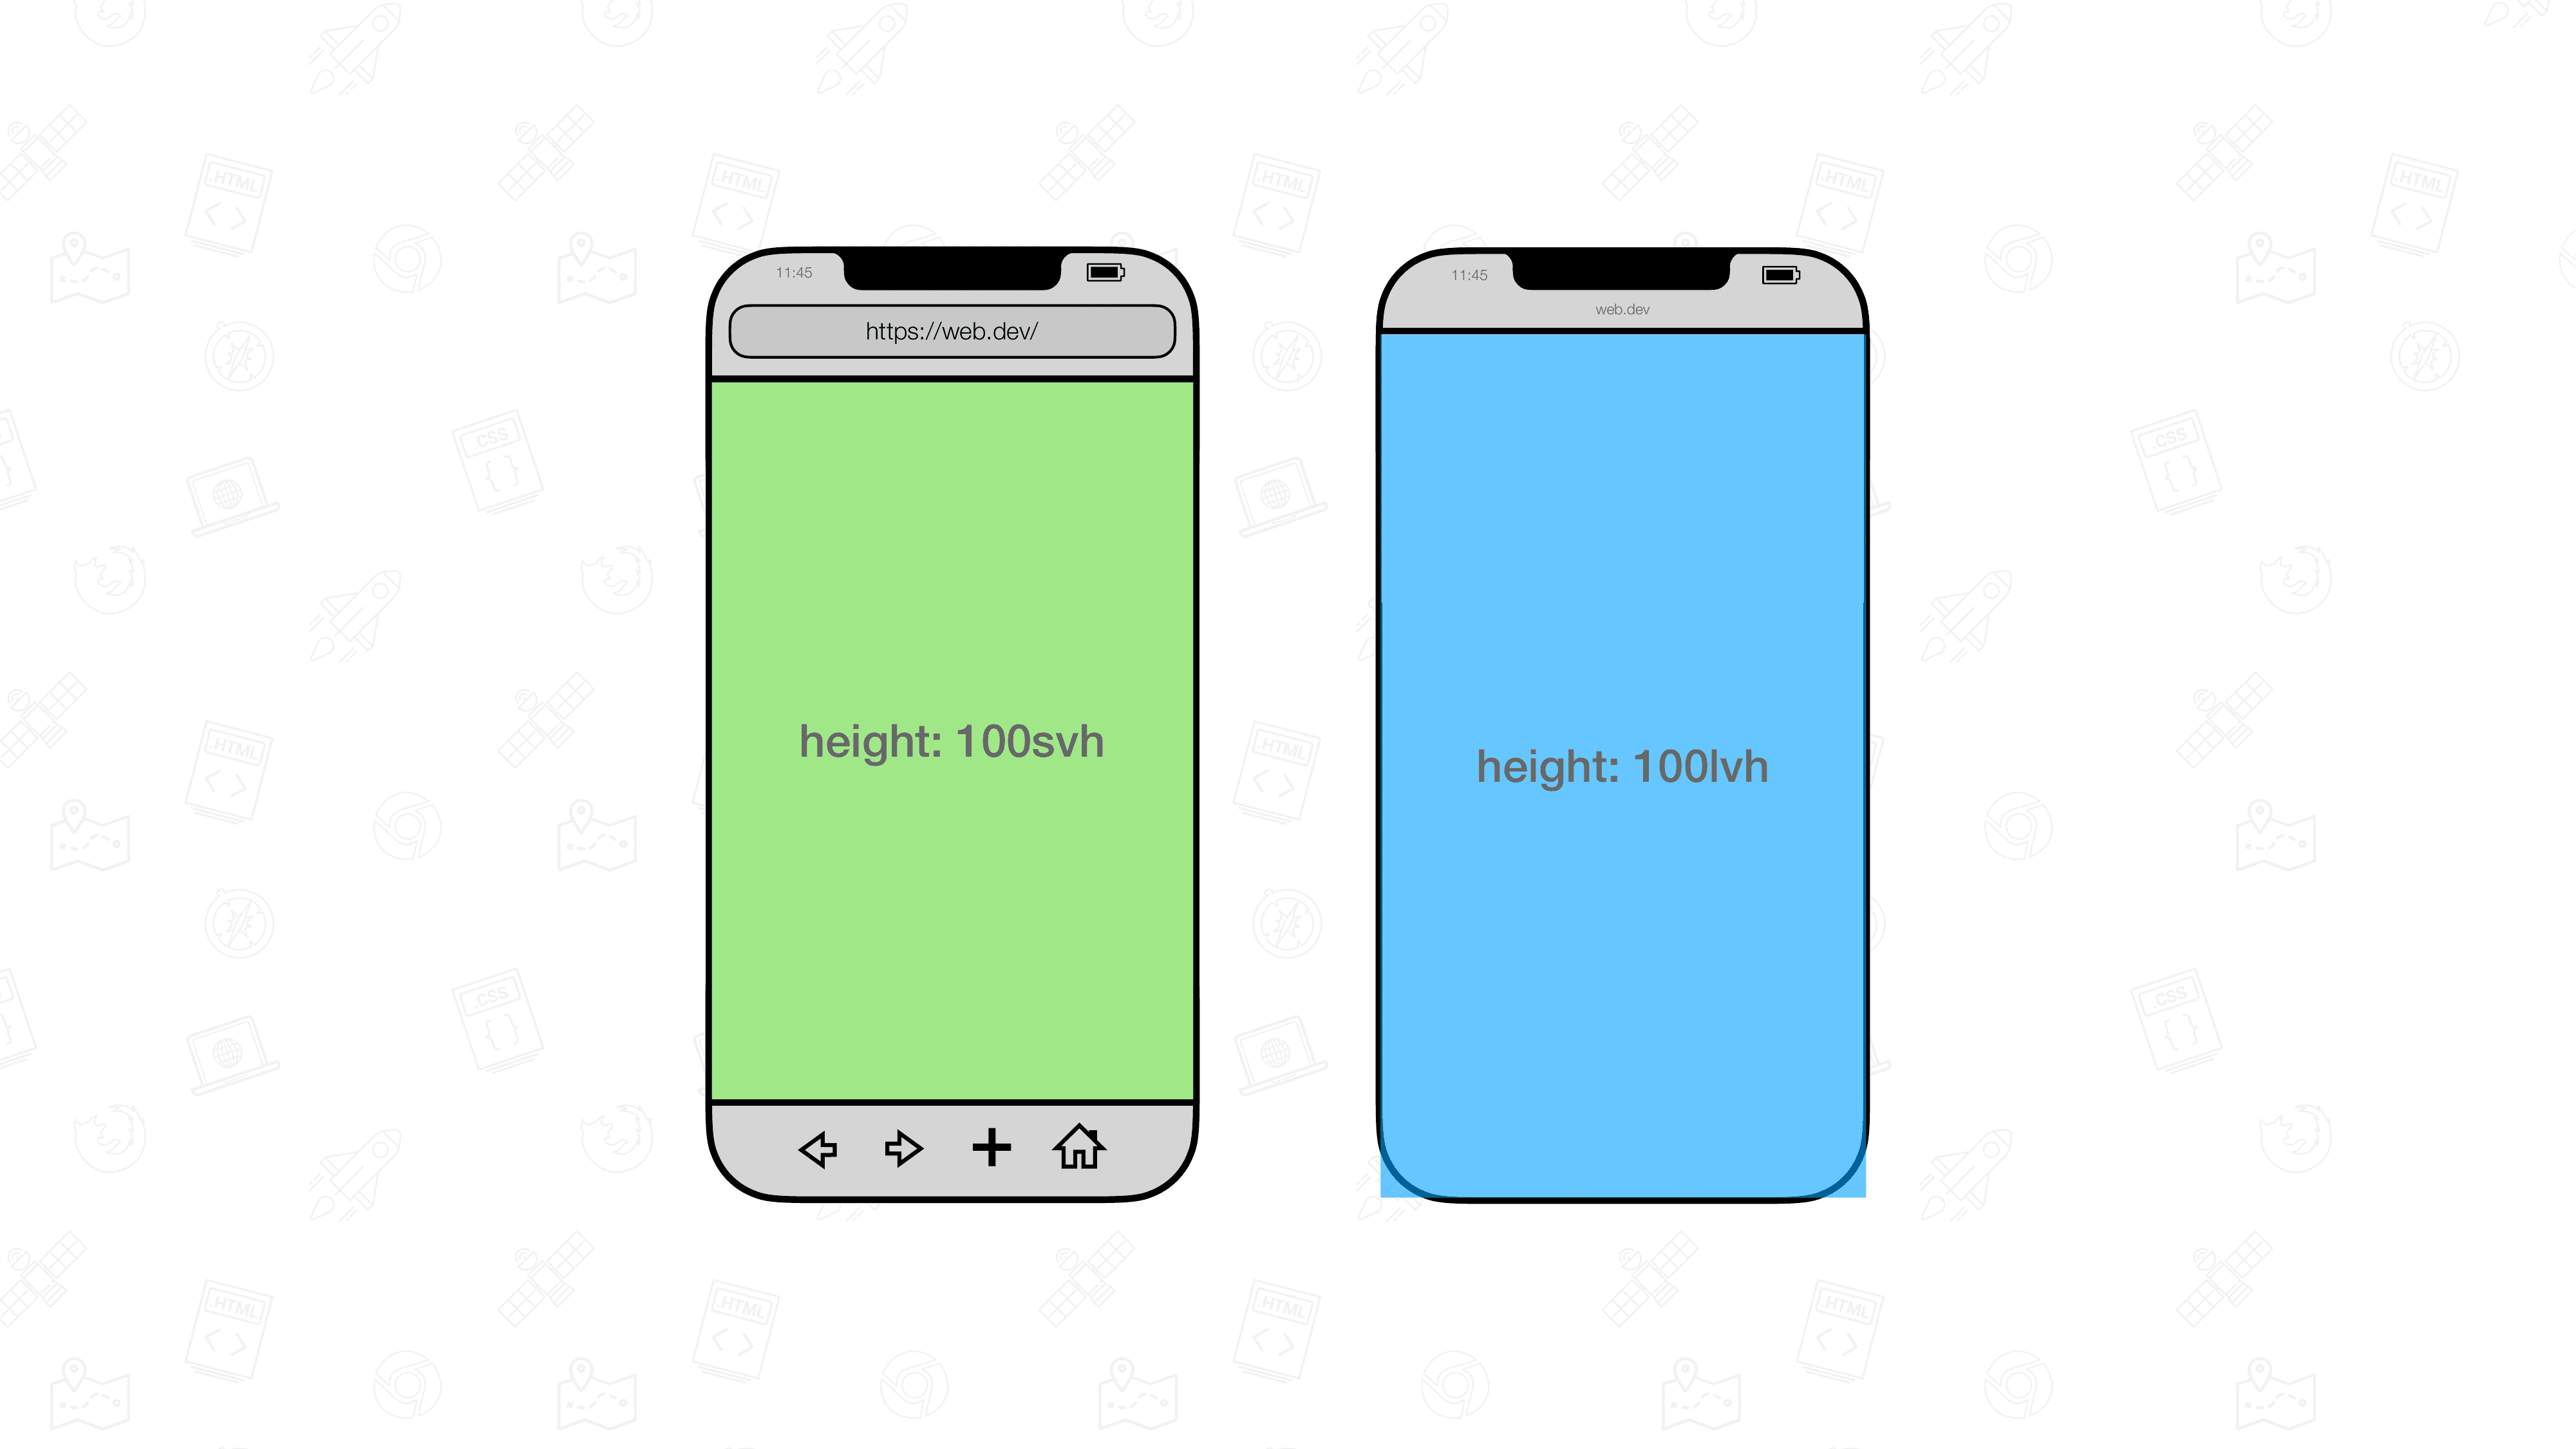 رسمان مرئيان لمتصفّحي الأجهزة الجوّالة في وضعهما بجانب بعضهما يحتوي أحدهما على عنصر بحجم 100svh والآخر 100lvh.